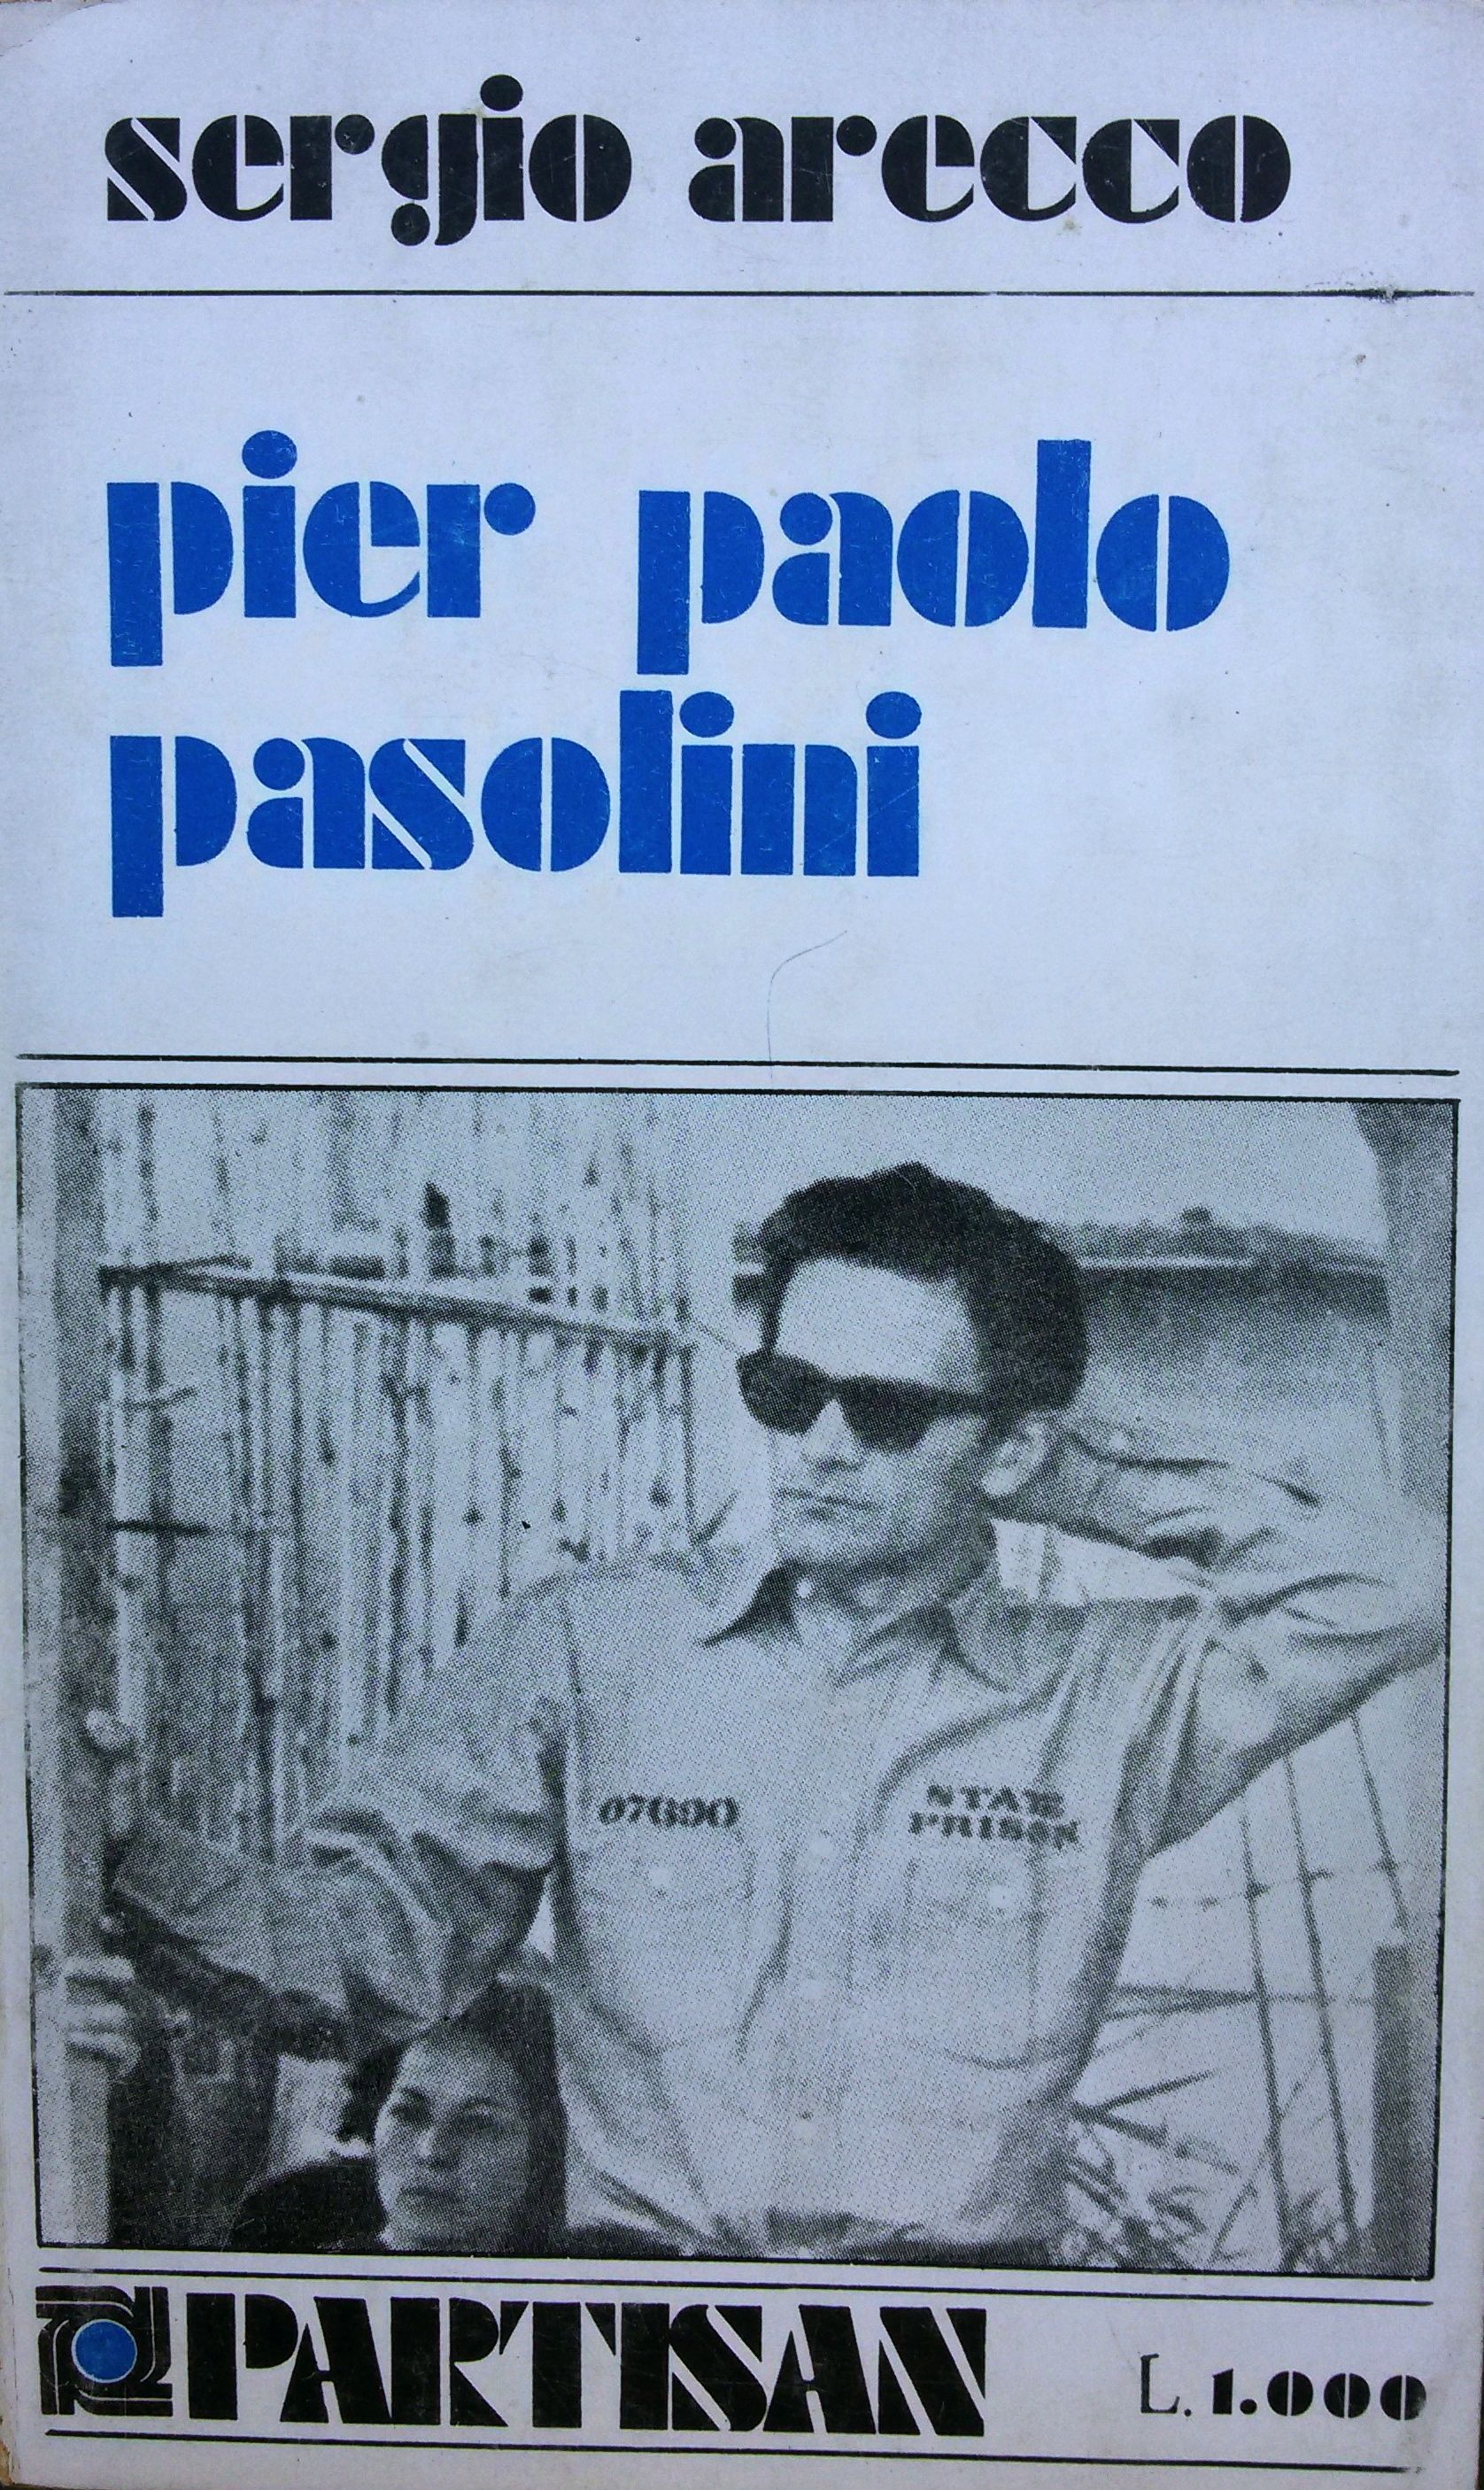 Pier Paolo Pasolini di Sergio Arecco (In appendice: Conversazione con Pier Paolo Pasolini) – Prima edizione